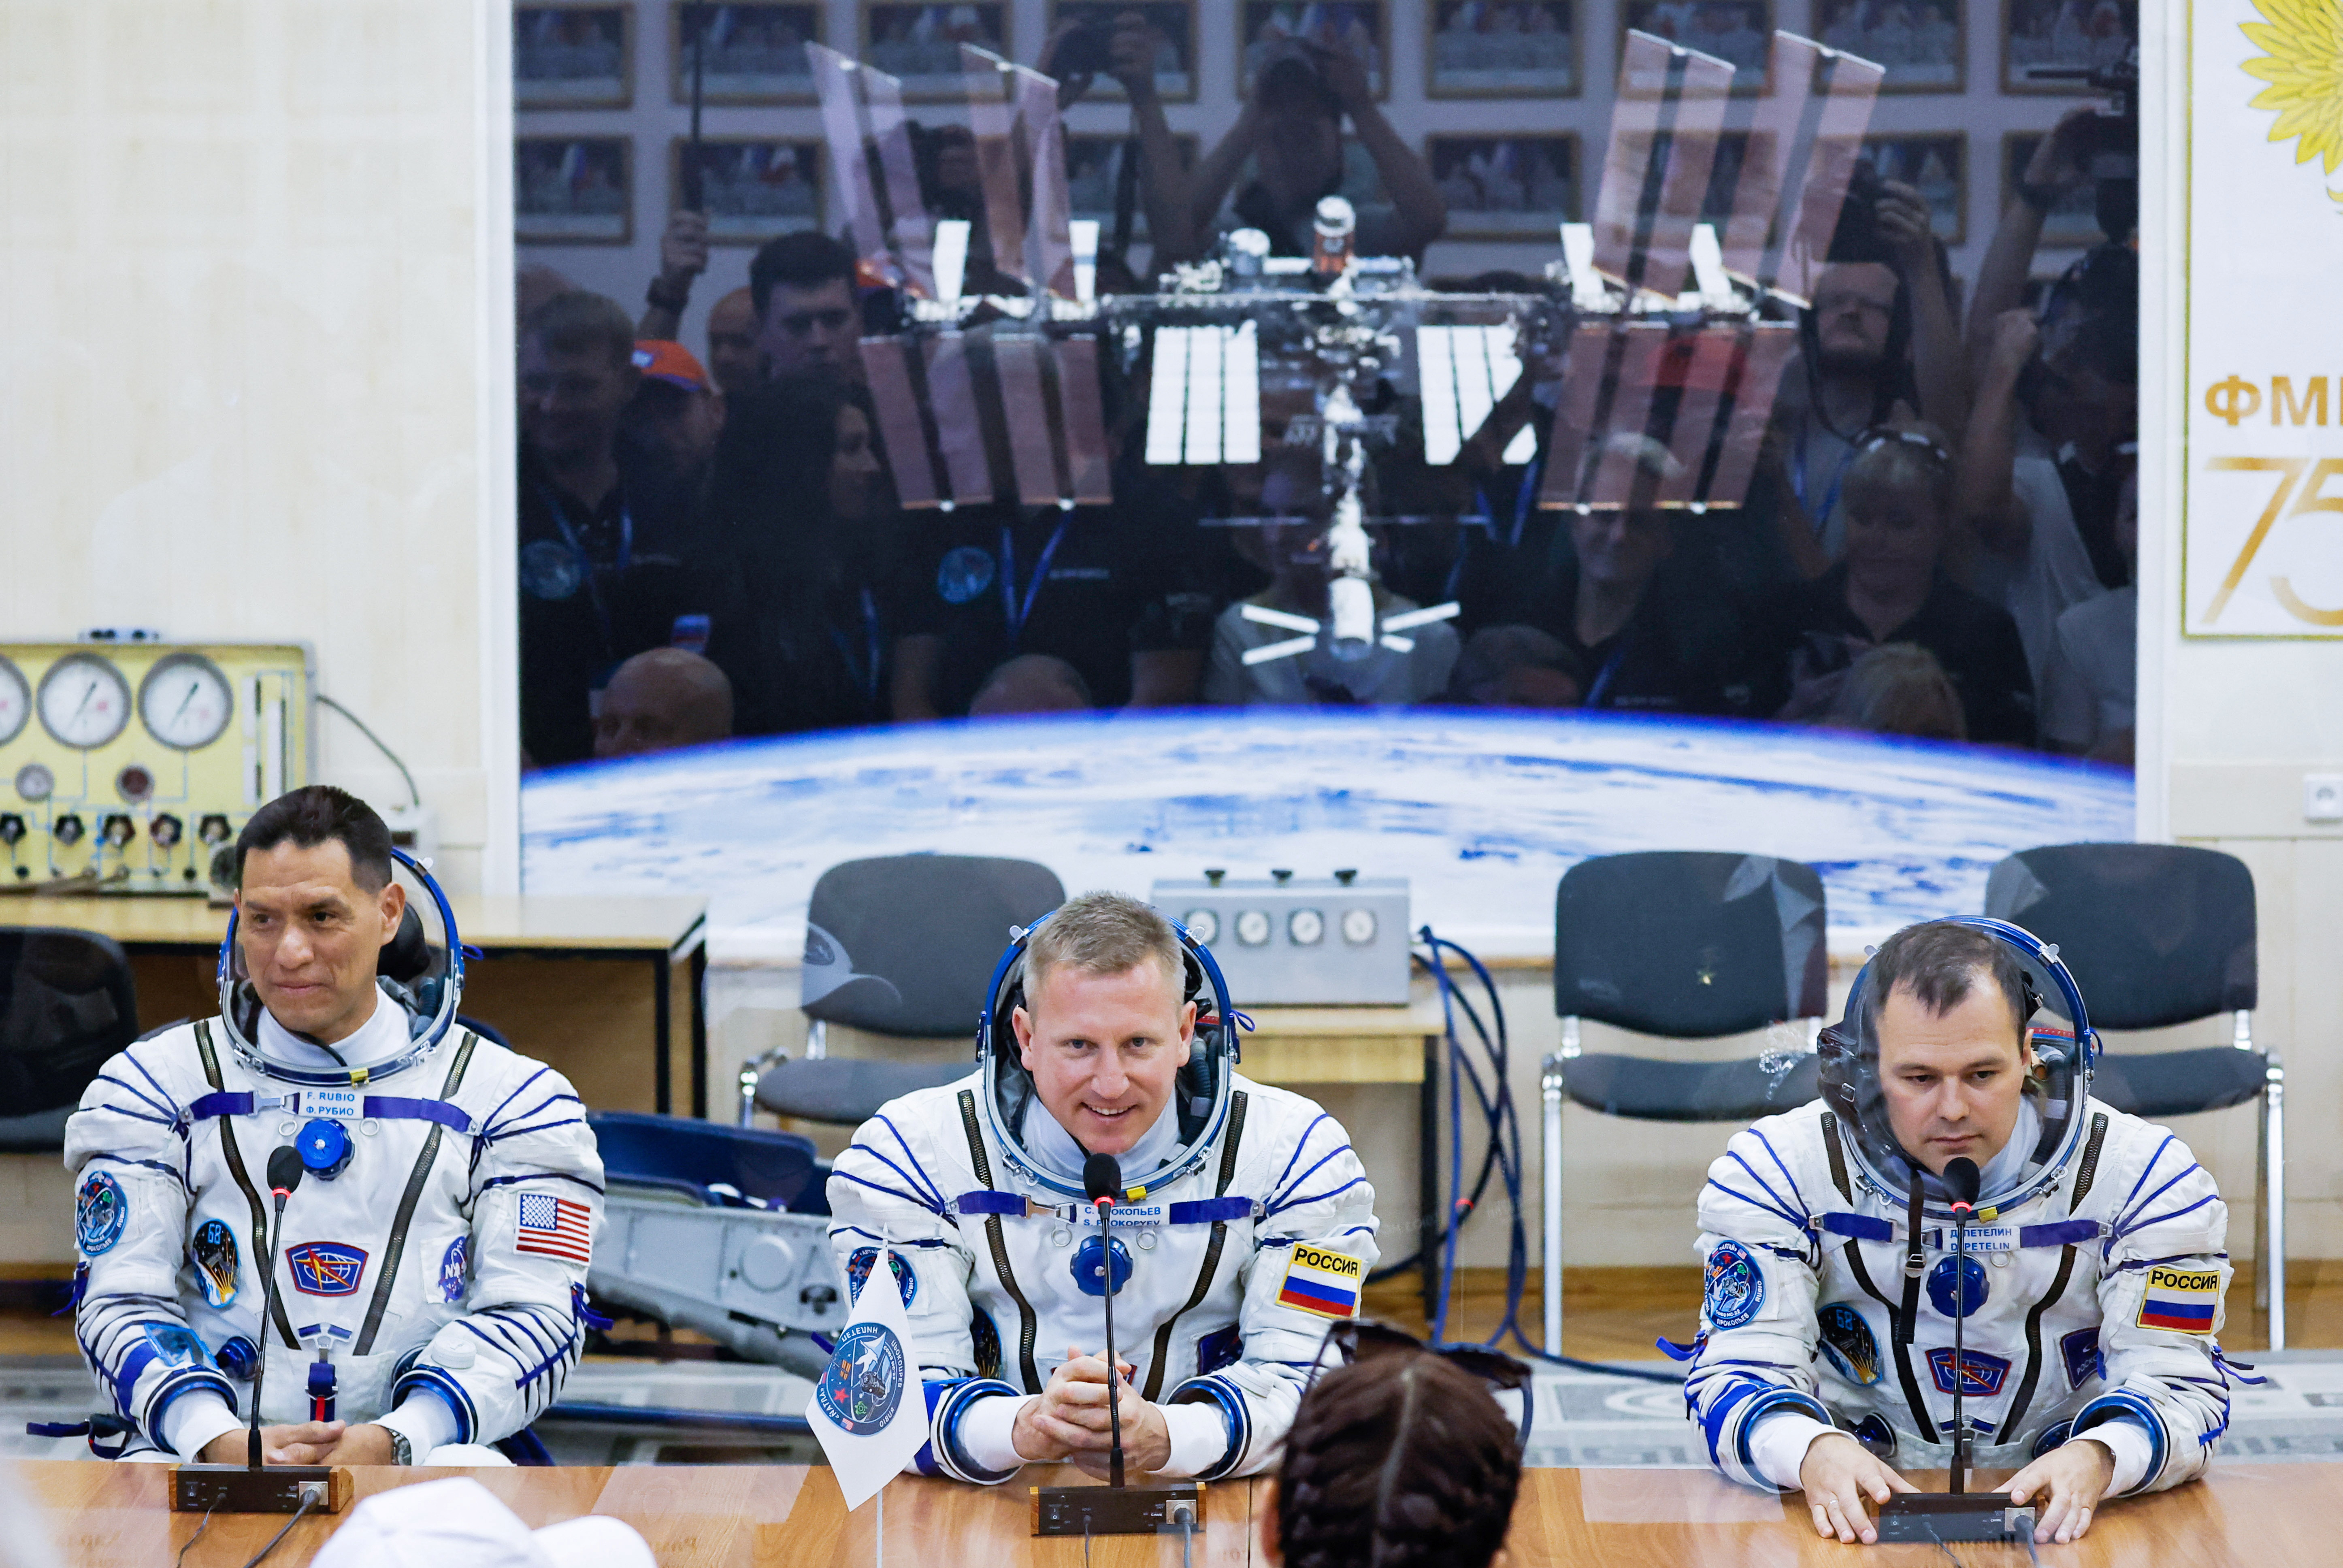 El astronauta de la NASA Frank Rubio, junto con los cosmonautas de Roscosmos Sergey Prokopyev y Dmitry Petelin  (REUTERS/Maxim Shemetov)